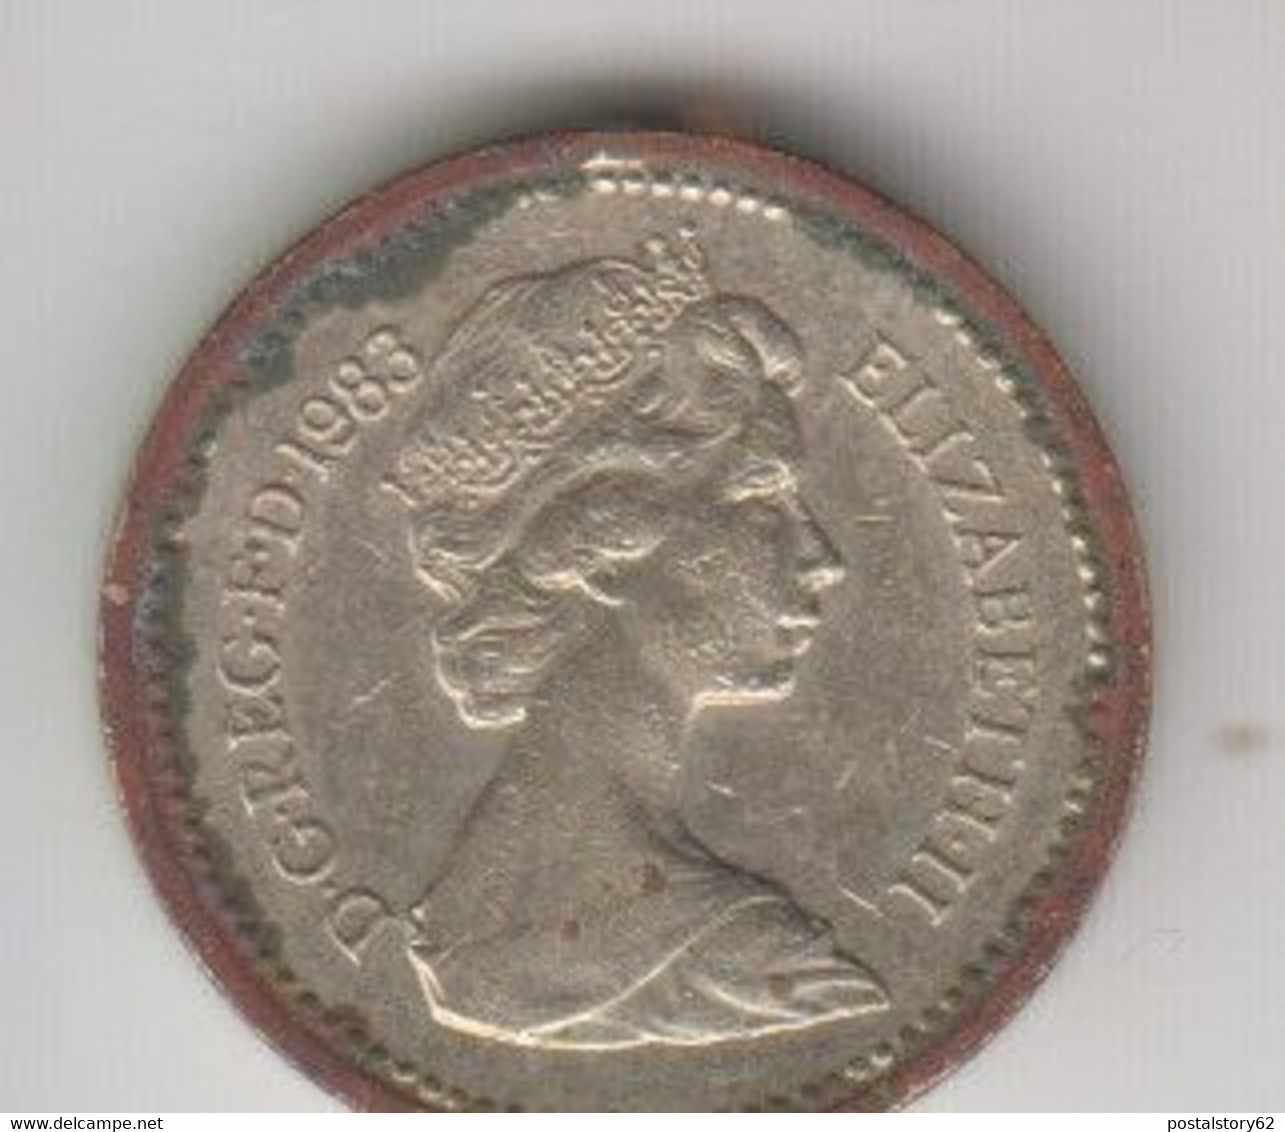 Gran Bretagna -One Pound 1983 - - 1 Pound